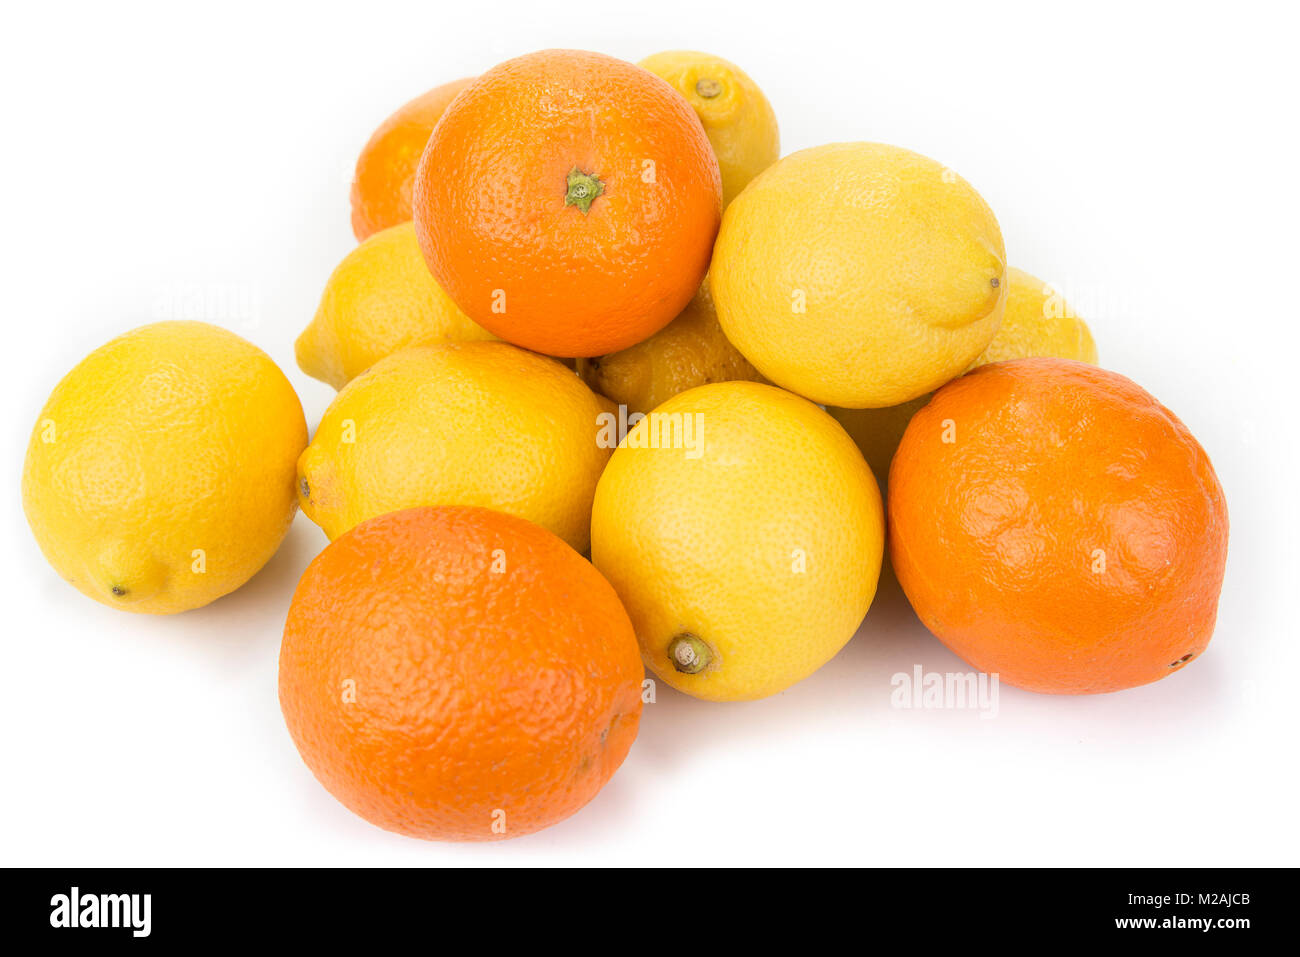 Fresh oranges and lemons on the white background Stock Photo